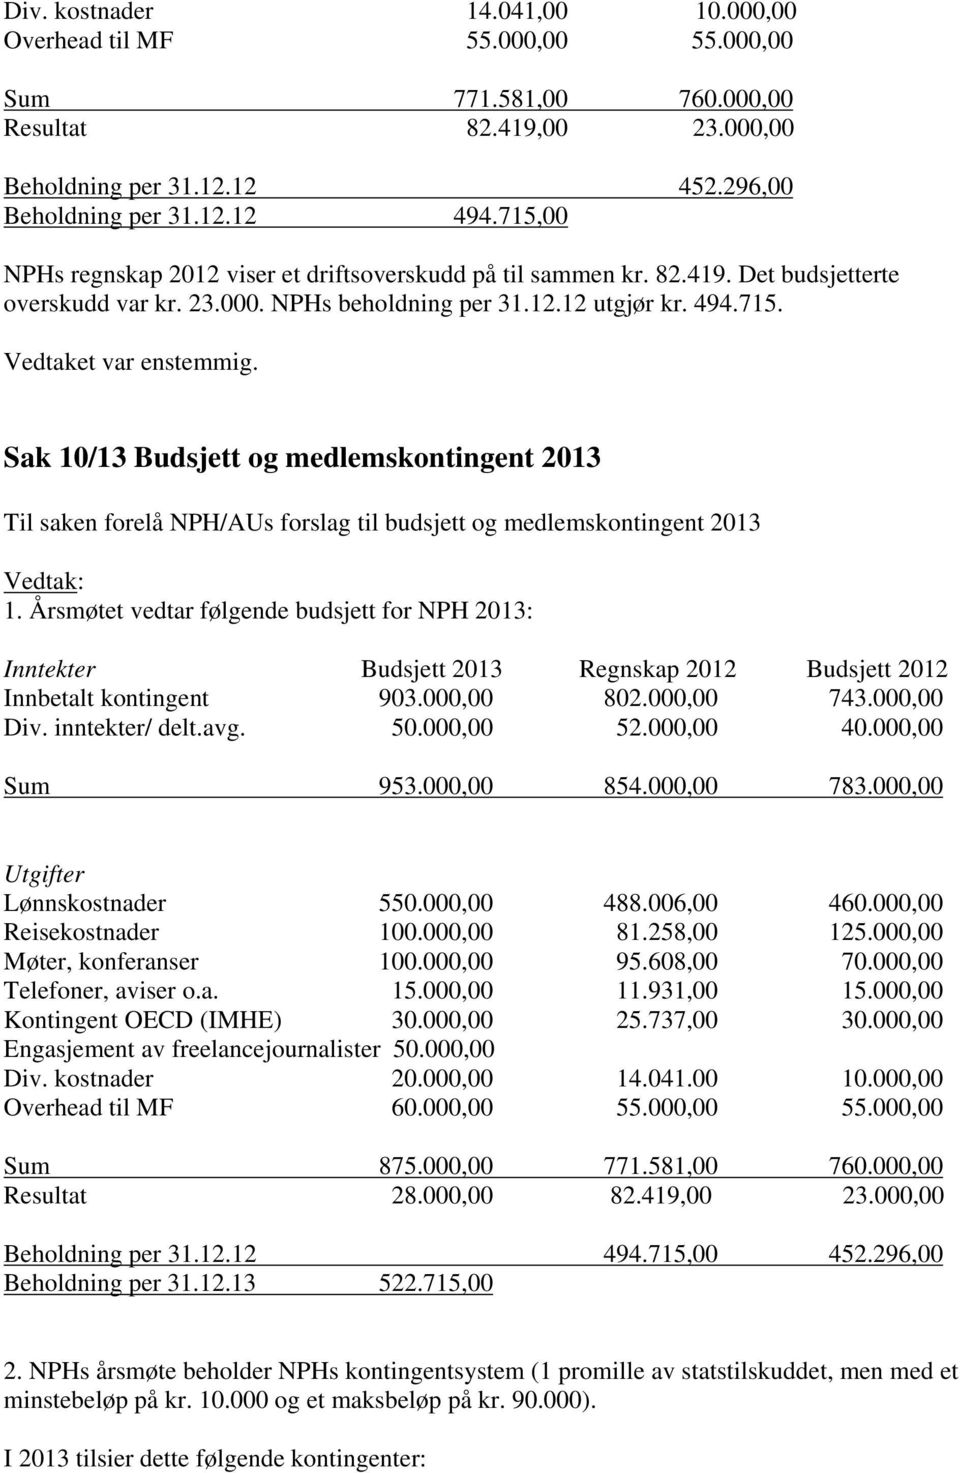 Årsmøtet vedtar følgende budsjett for NPH 2013: Inntekter Budsjett 2013 Regnskap 2012 Budsjett 2012 Innbetalt kontingent 903.000,00 802.000,00 743.000,00 Div. inntekter/ delt.avg. 50.000,00 52.